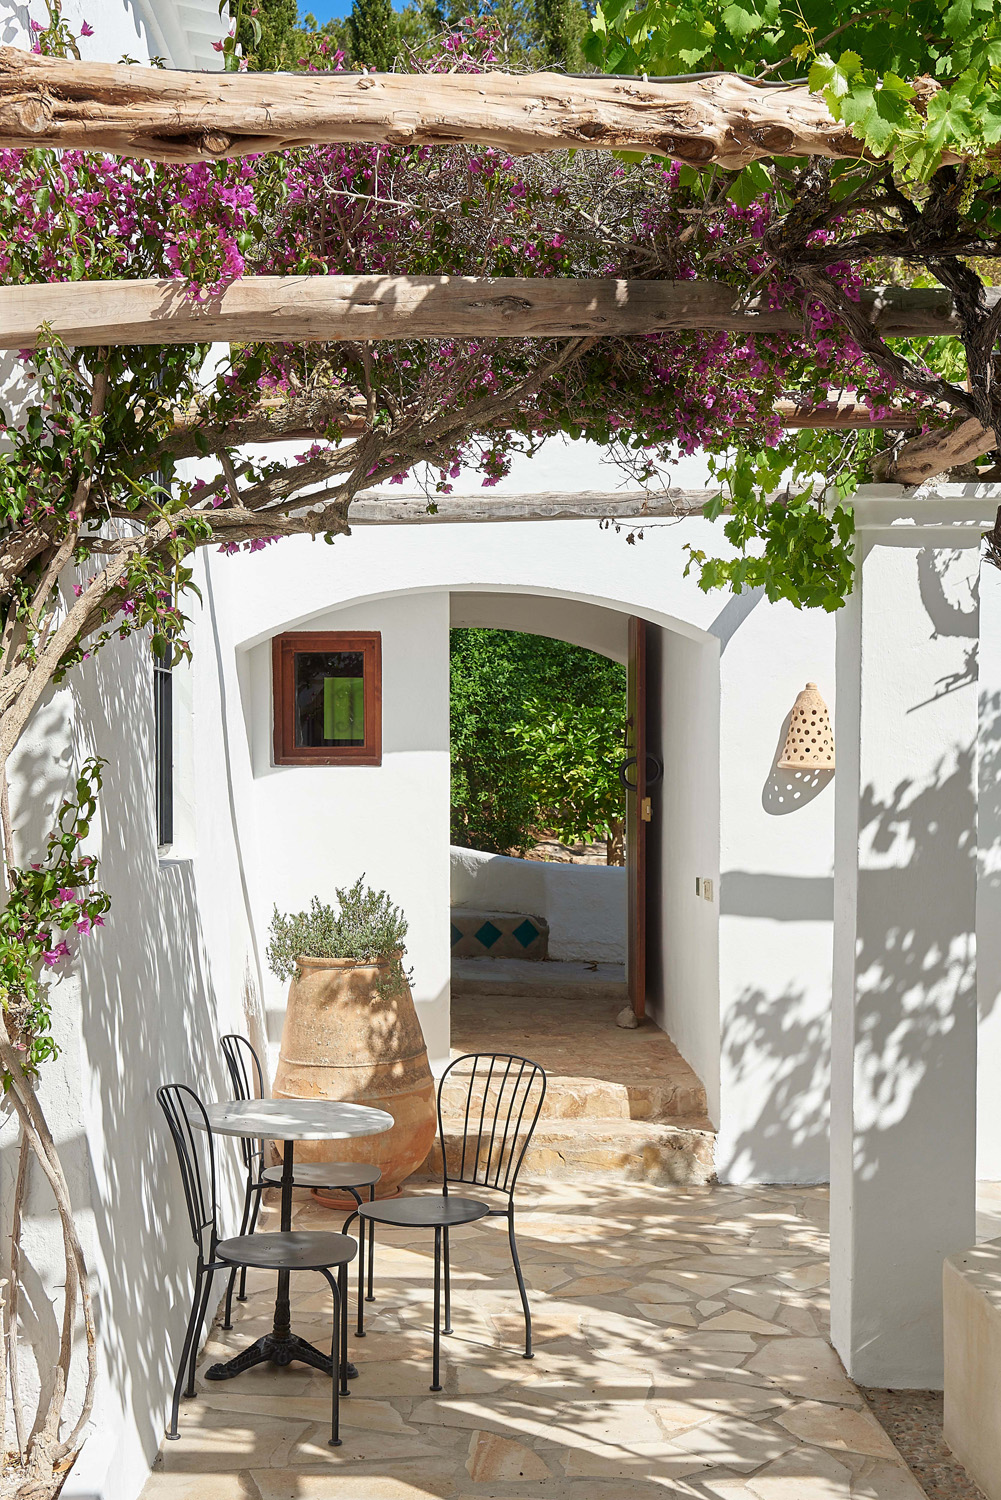 Foliage climbs a pergola above the shaded terrace of an Ibiza villa